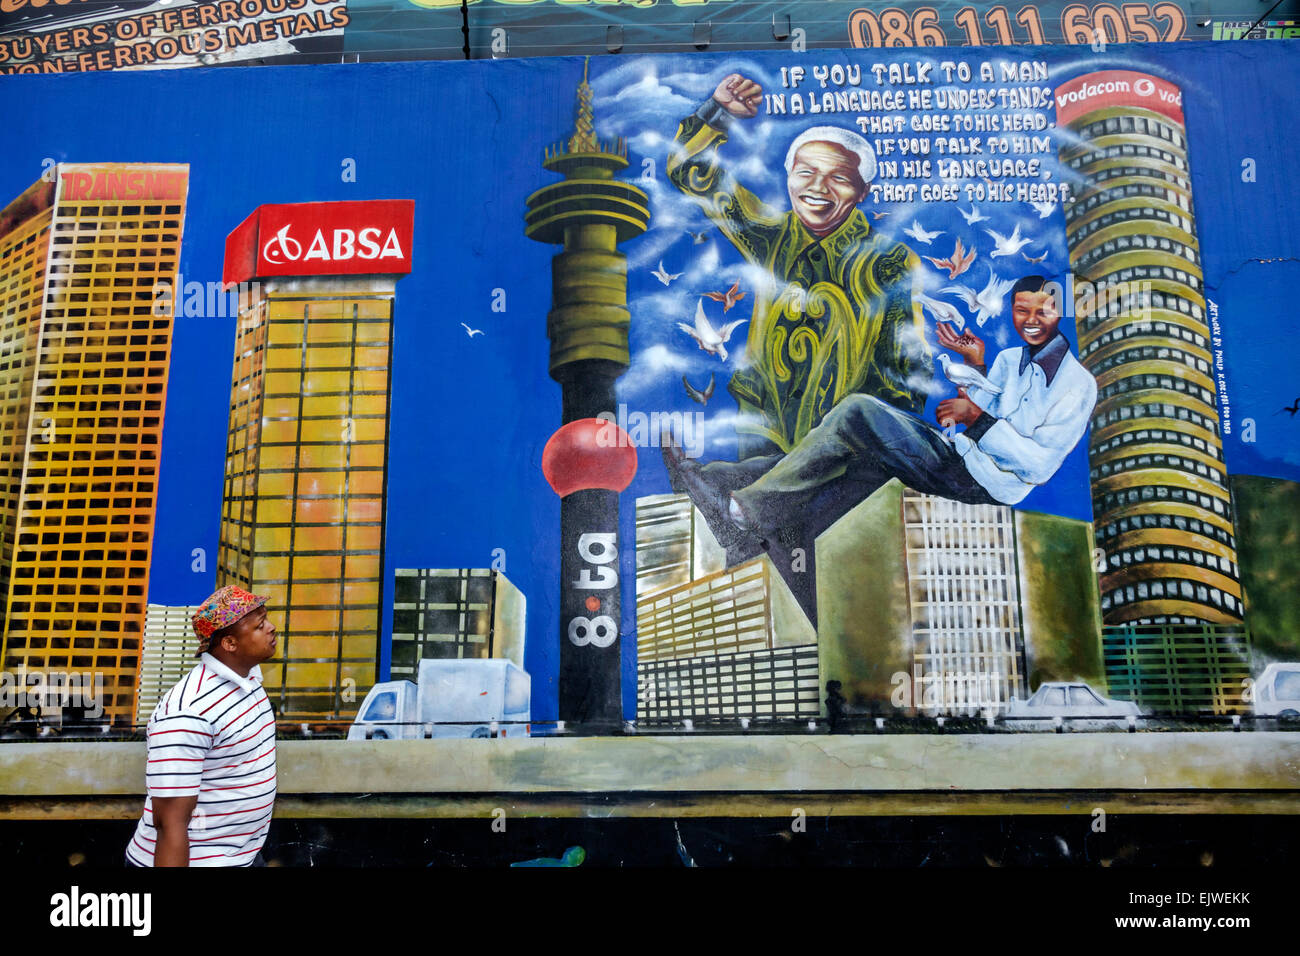 Johannesburg Afrique du Sud,Maboneng District,Arts on main,quartier urbain plus doux,fresque,Nelson Mandela,ABSA,Black man men male,SAfri150306120 Banque D'Images